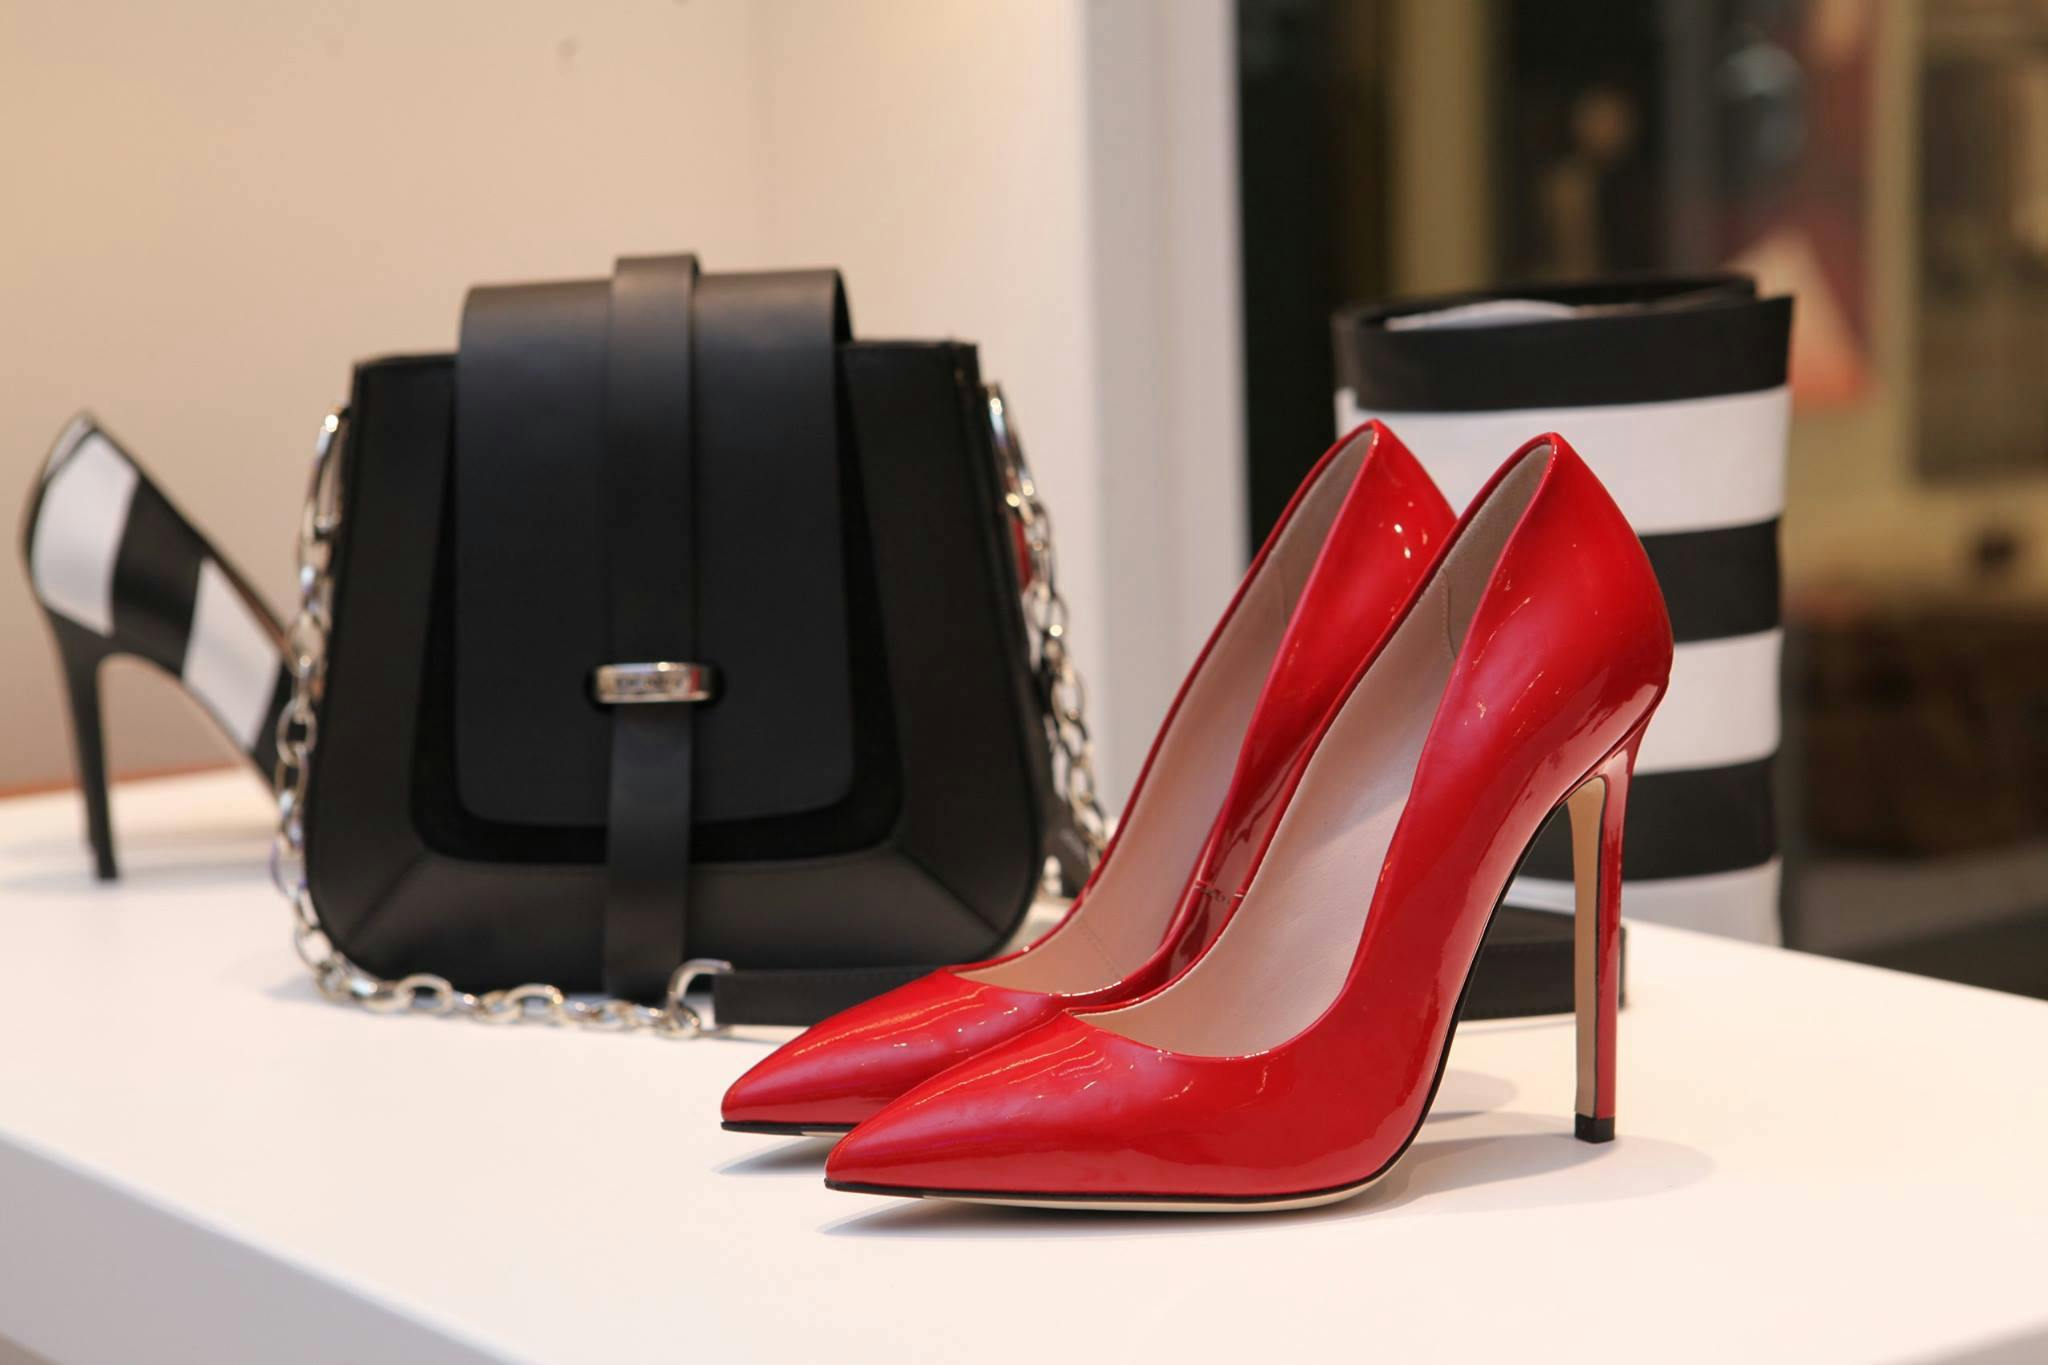 A pair of high heels | Source: Pexels